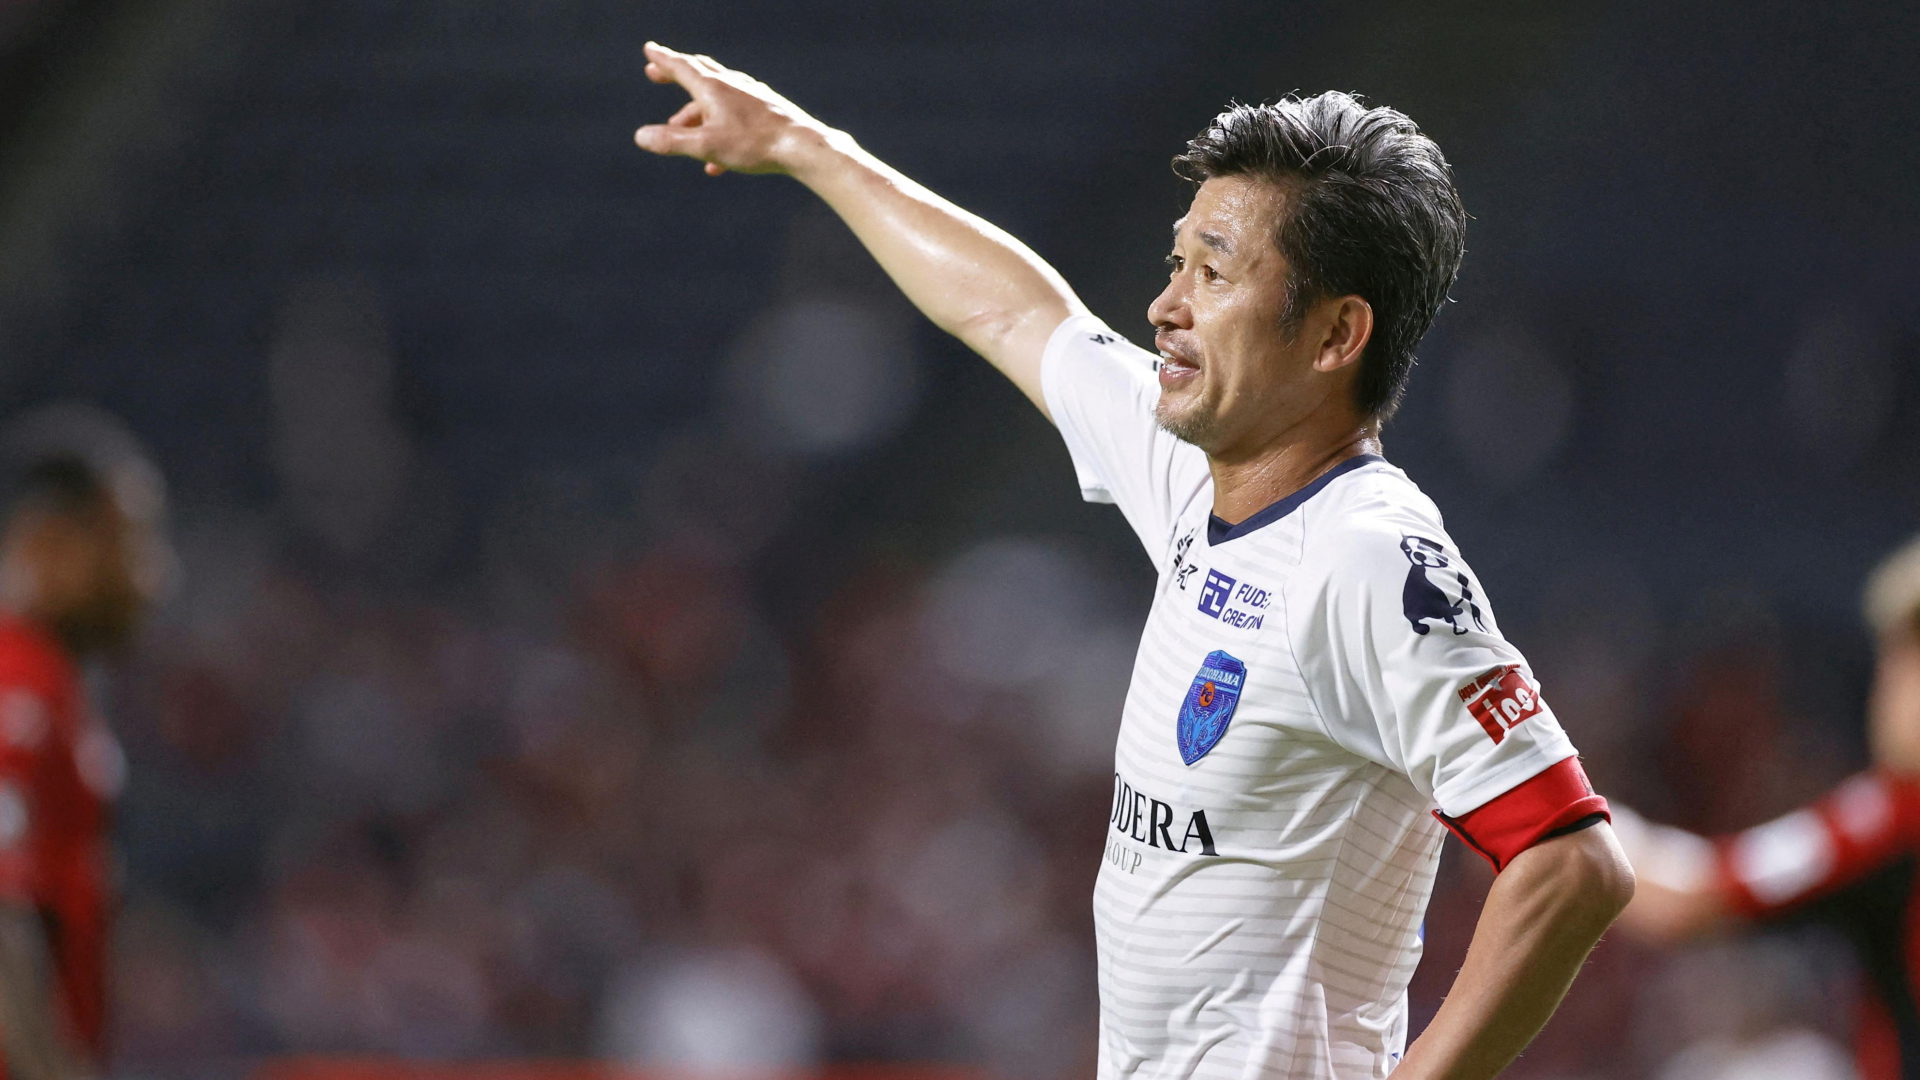 Der japanische Fußballprofi Kazuyoshi Miura. | REUTERS